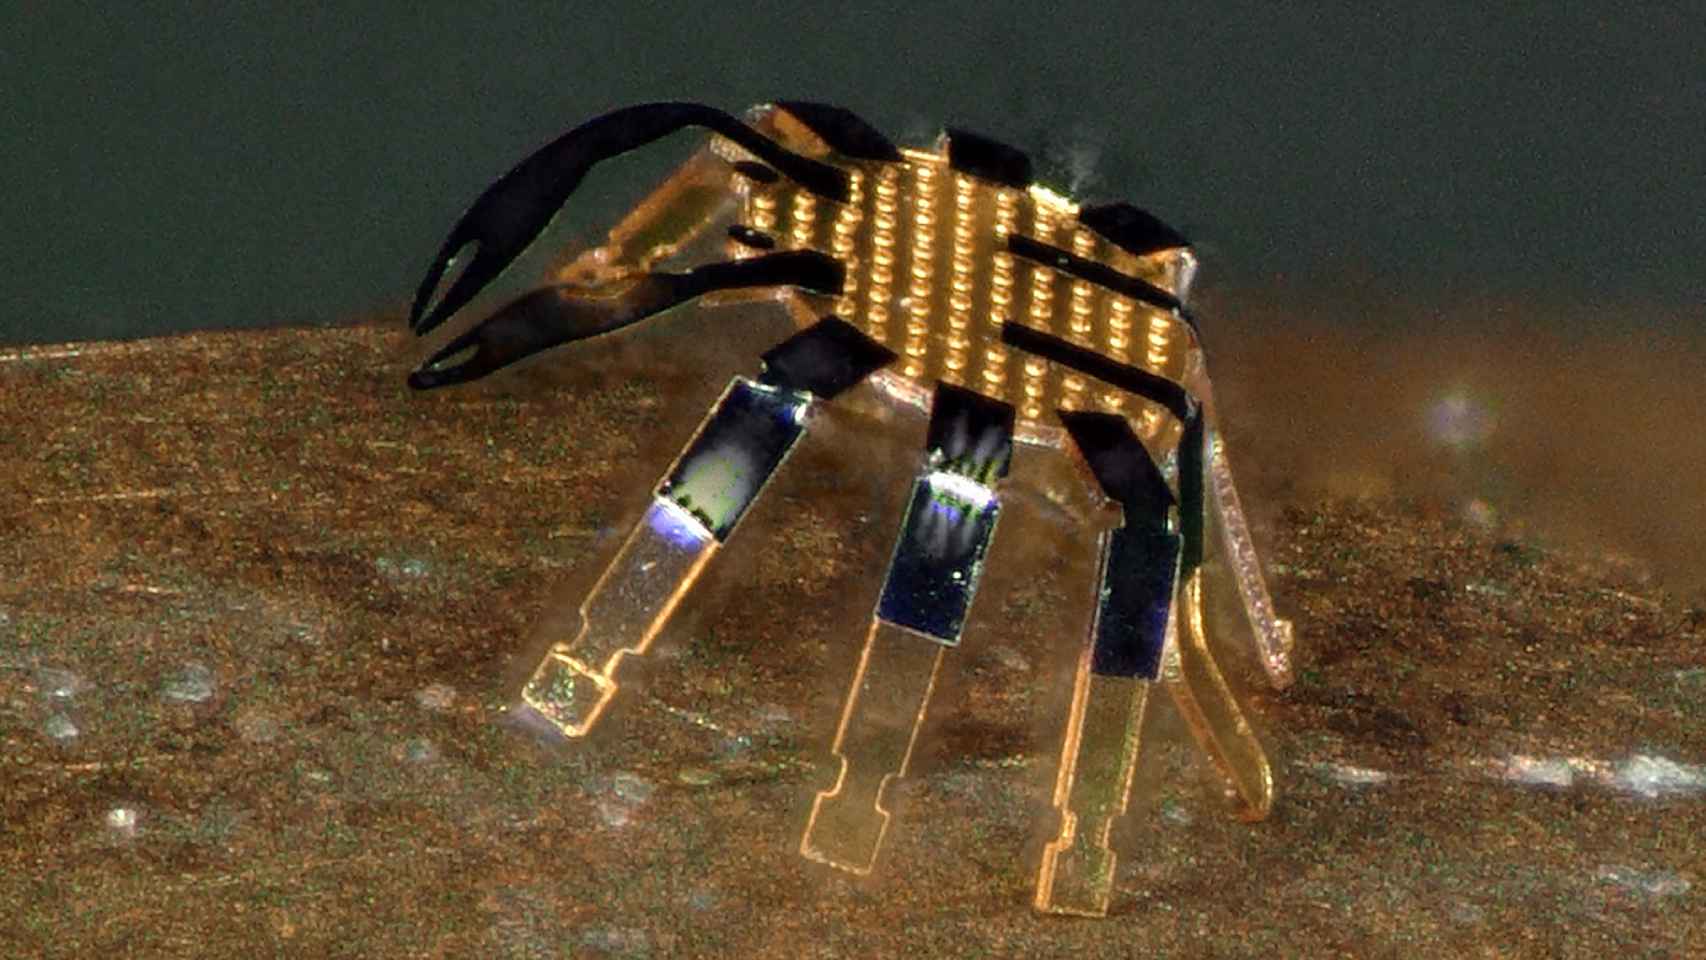 El microrobot está fabricado en una aleación metálica